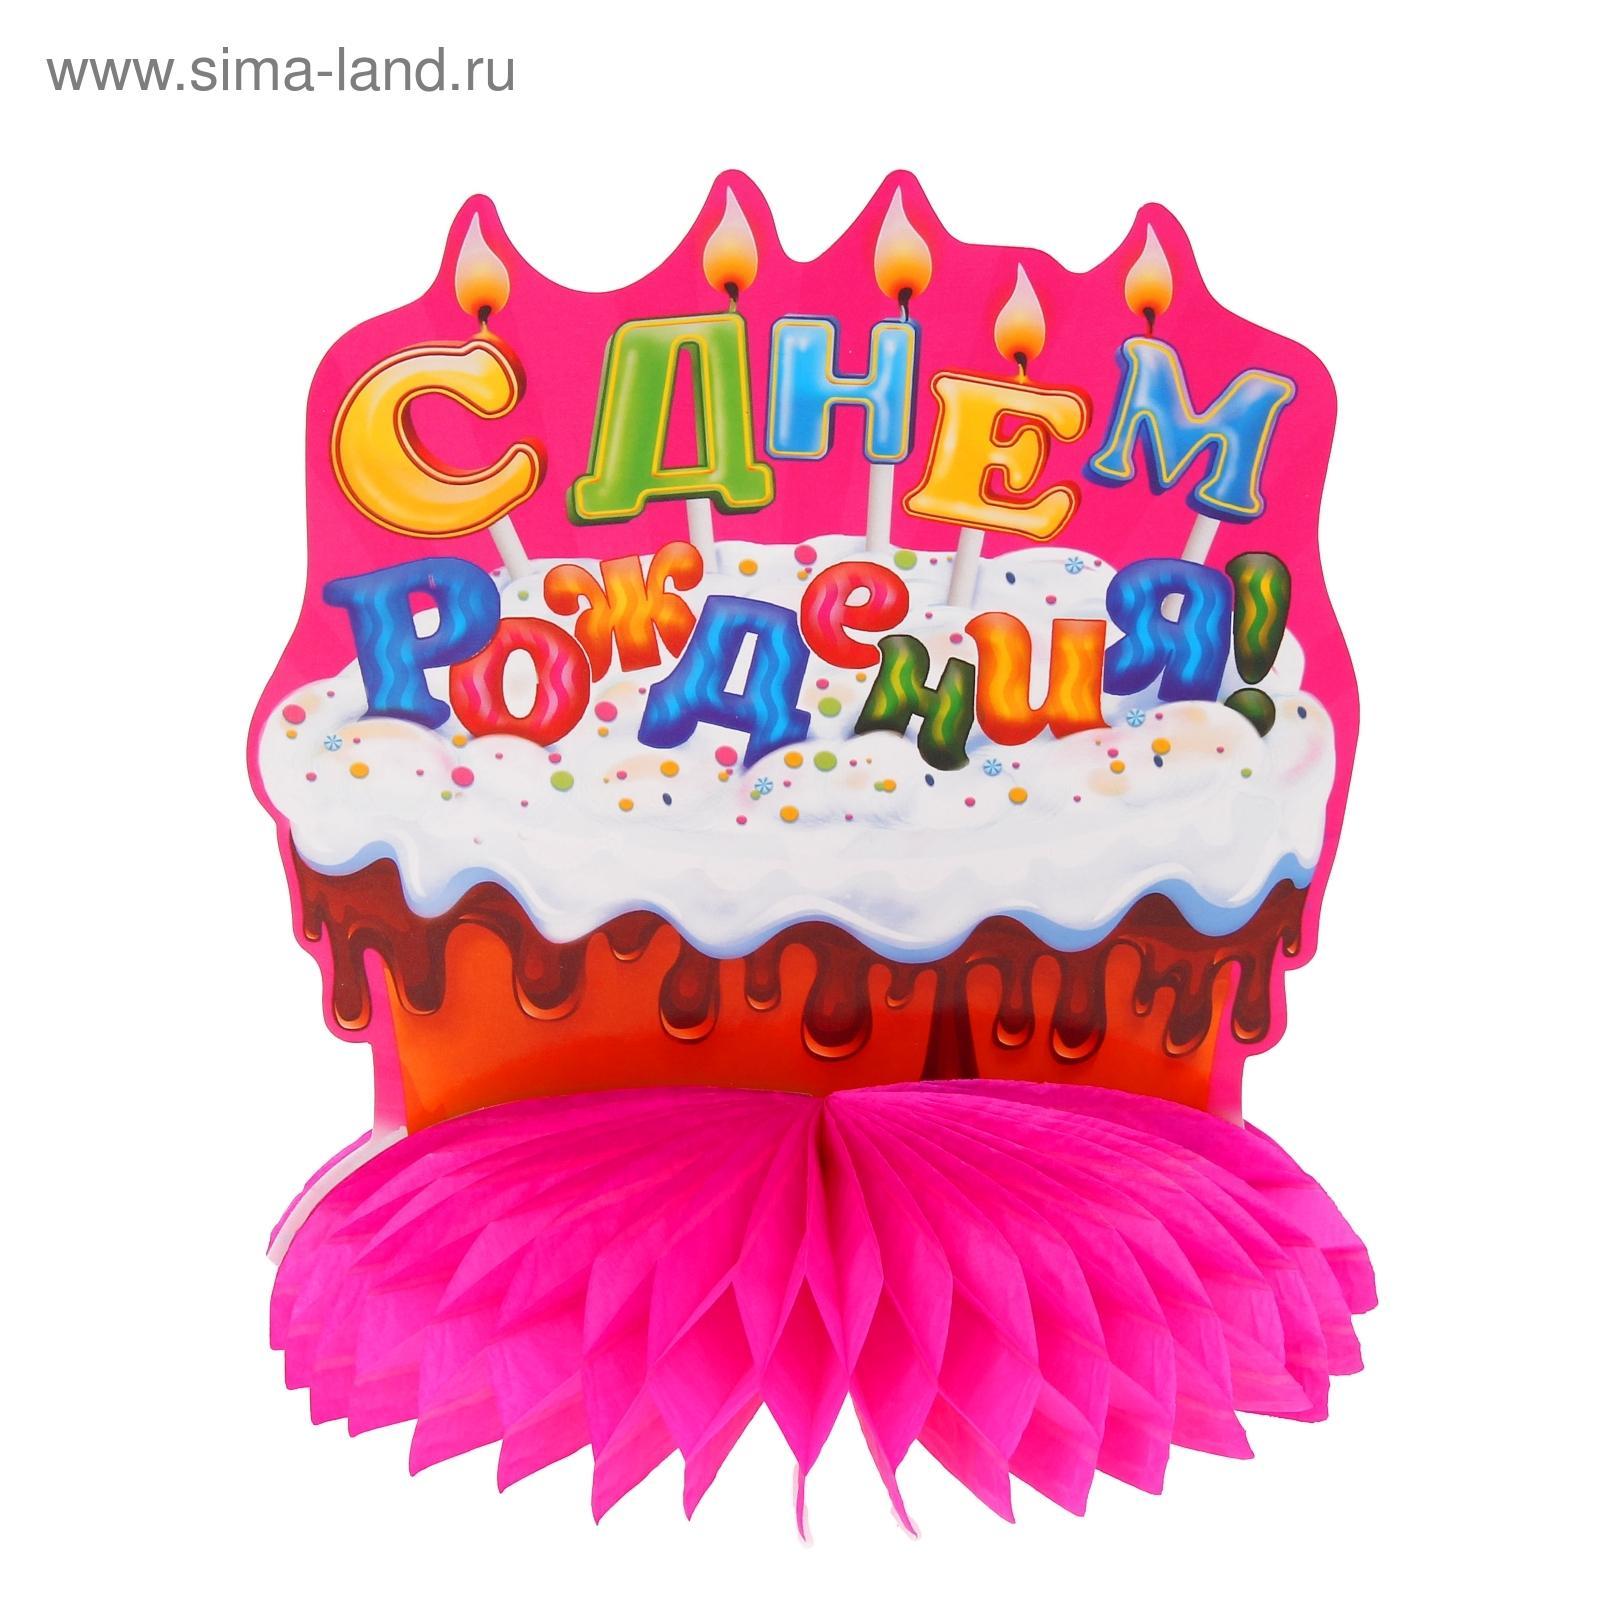 Украшение для стола с гофре "С днём рождения!", тортик, d=20 см